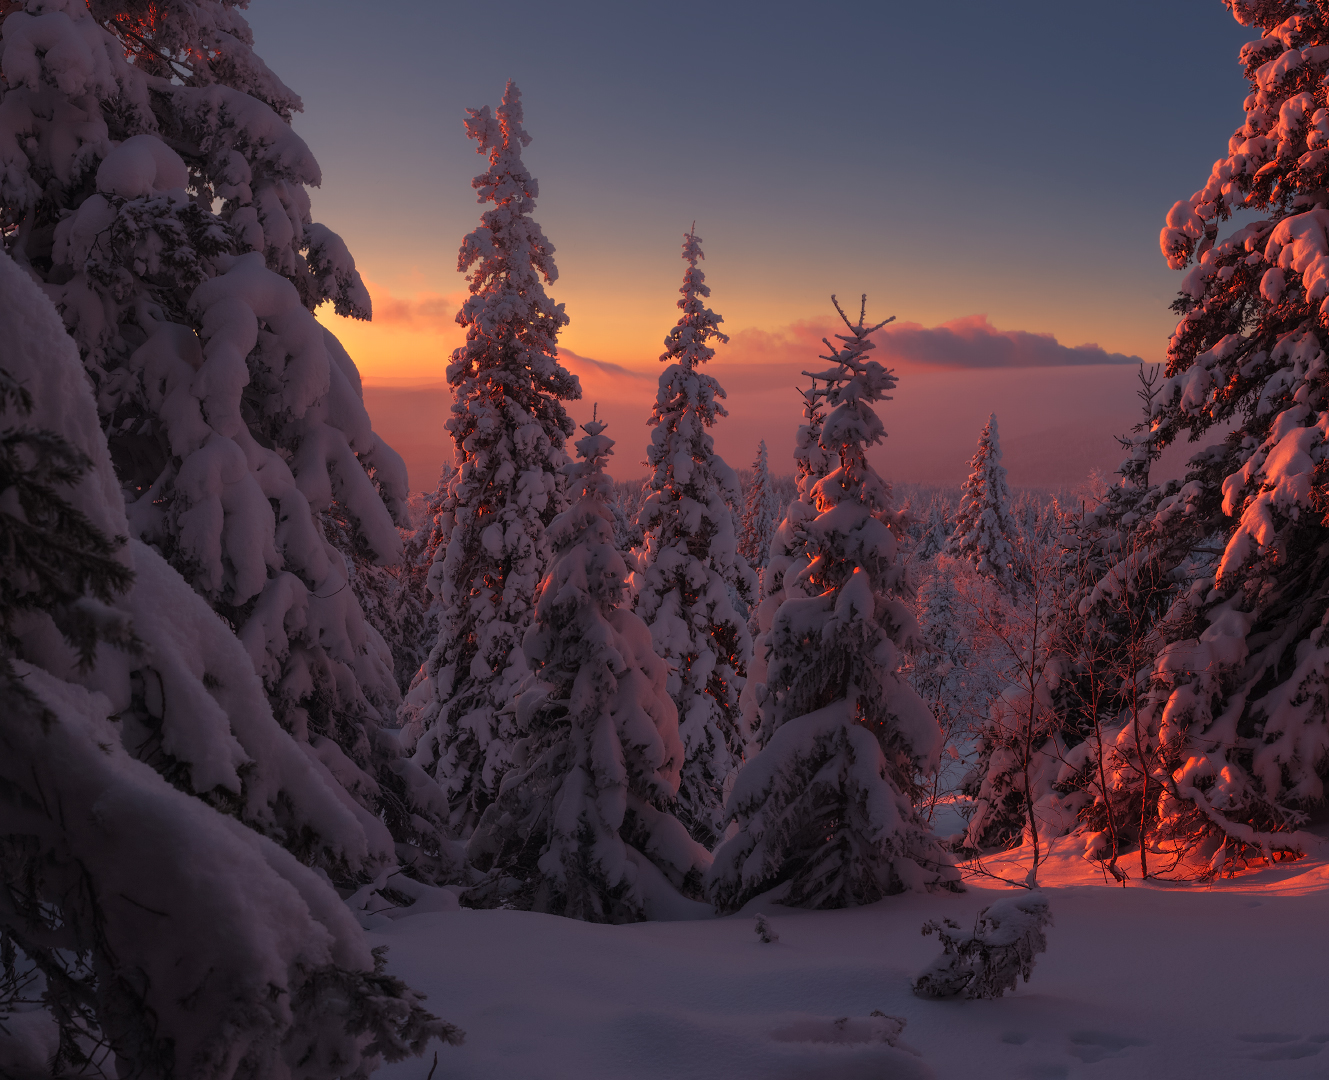  Работа легенды зимнего леса. Фотограф marateaman